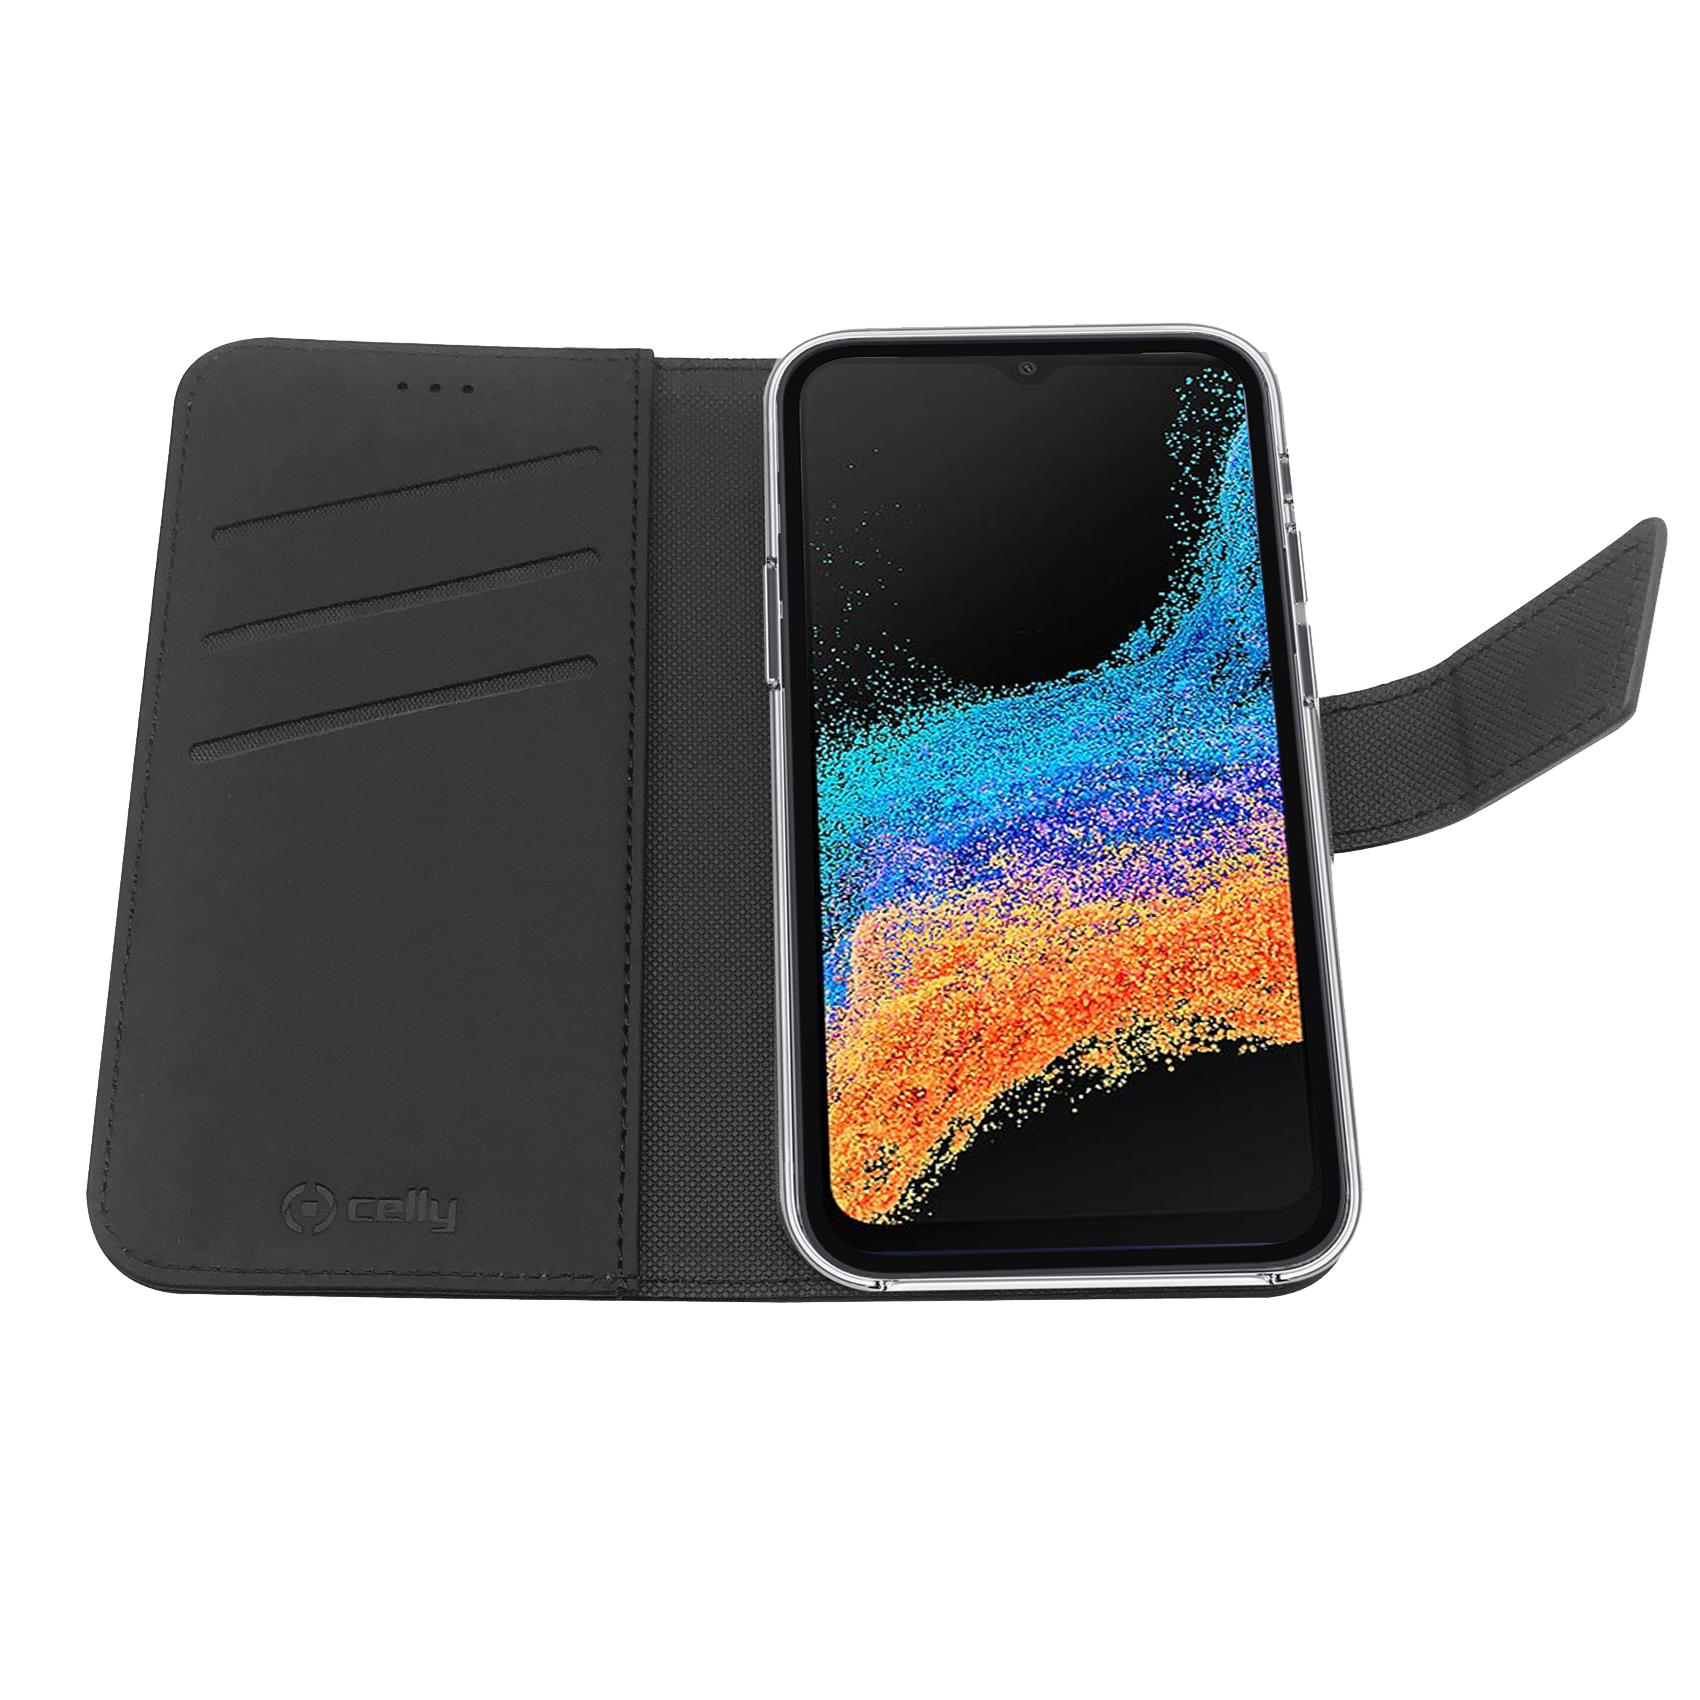 Custodia Celly Samsung A23 4G A23 5G wallet case black WALLY1015